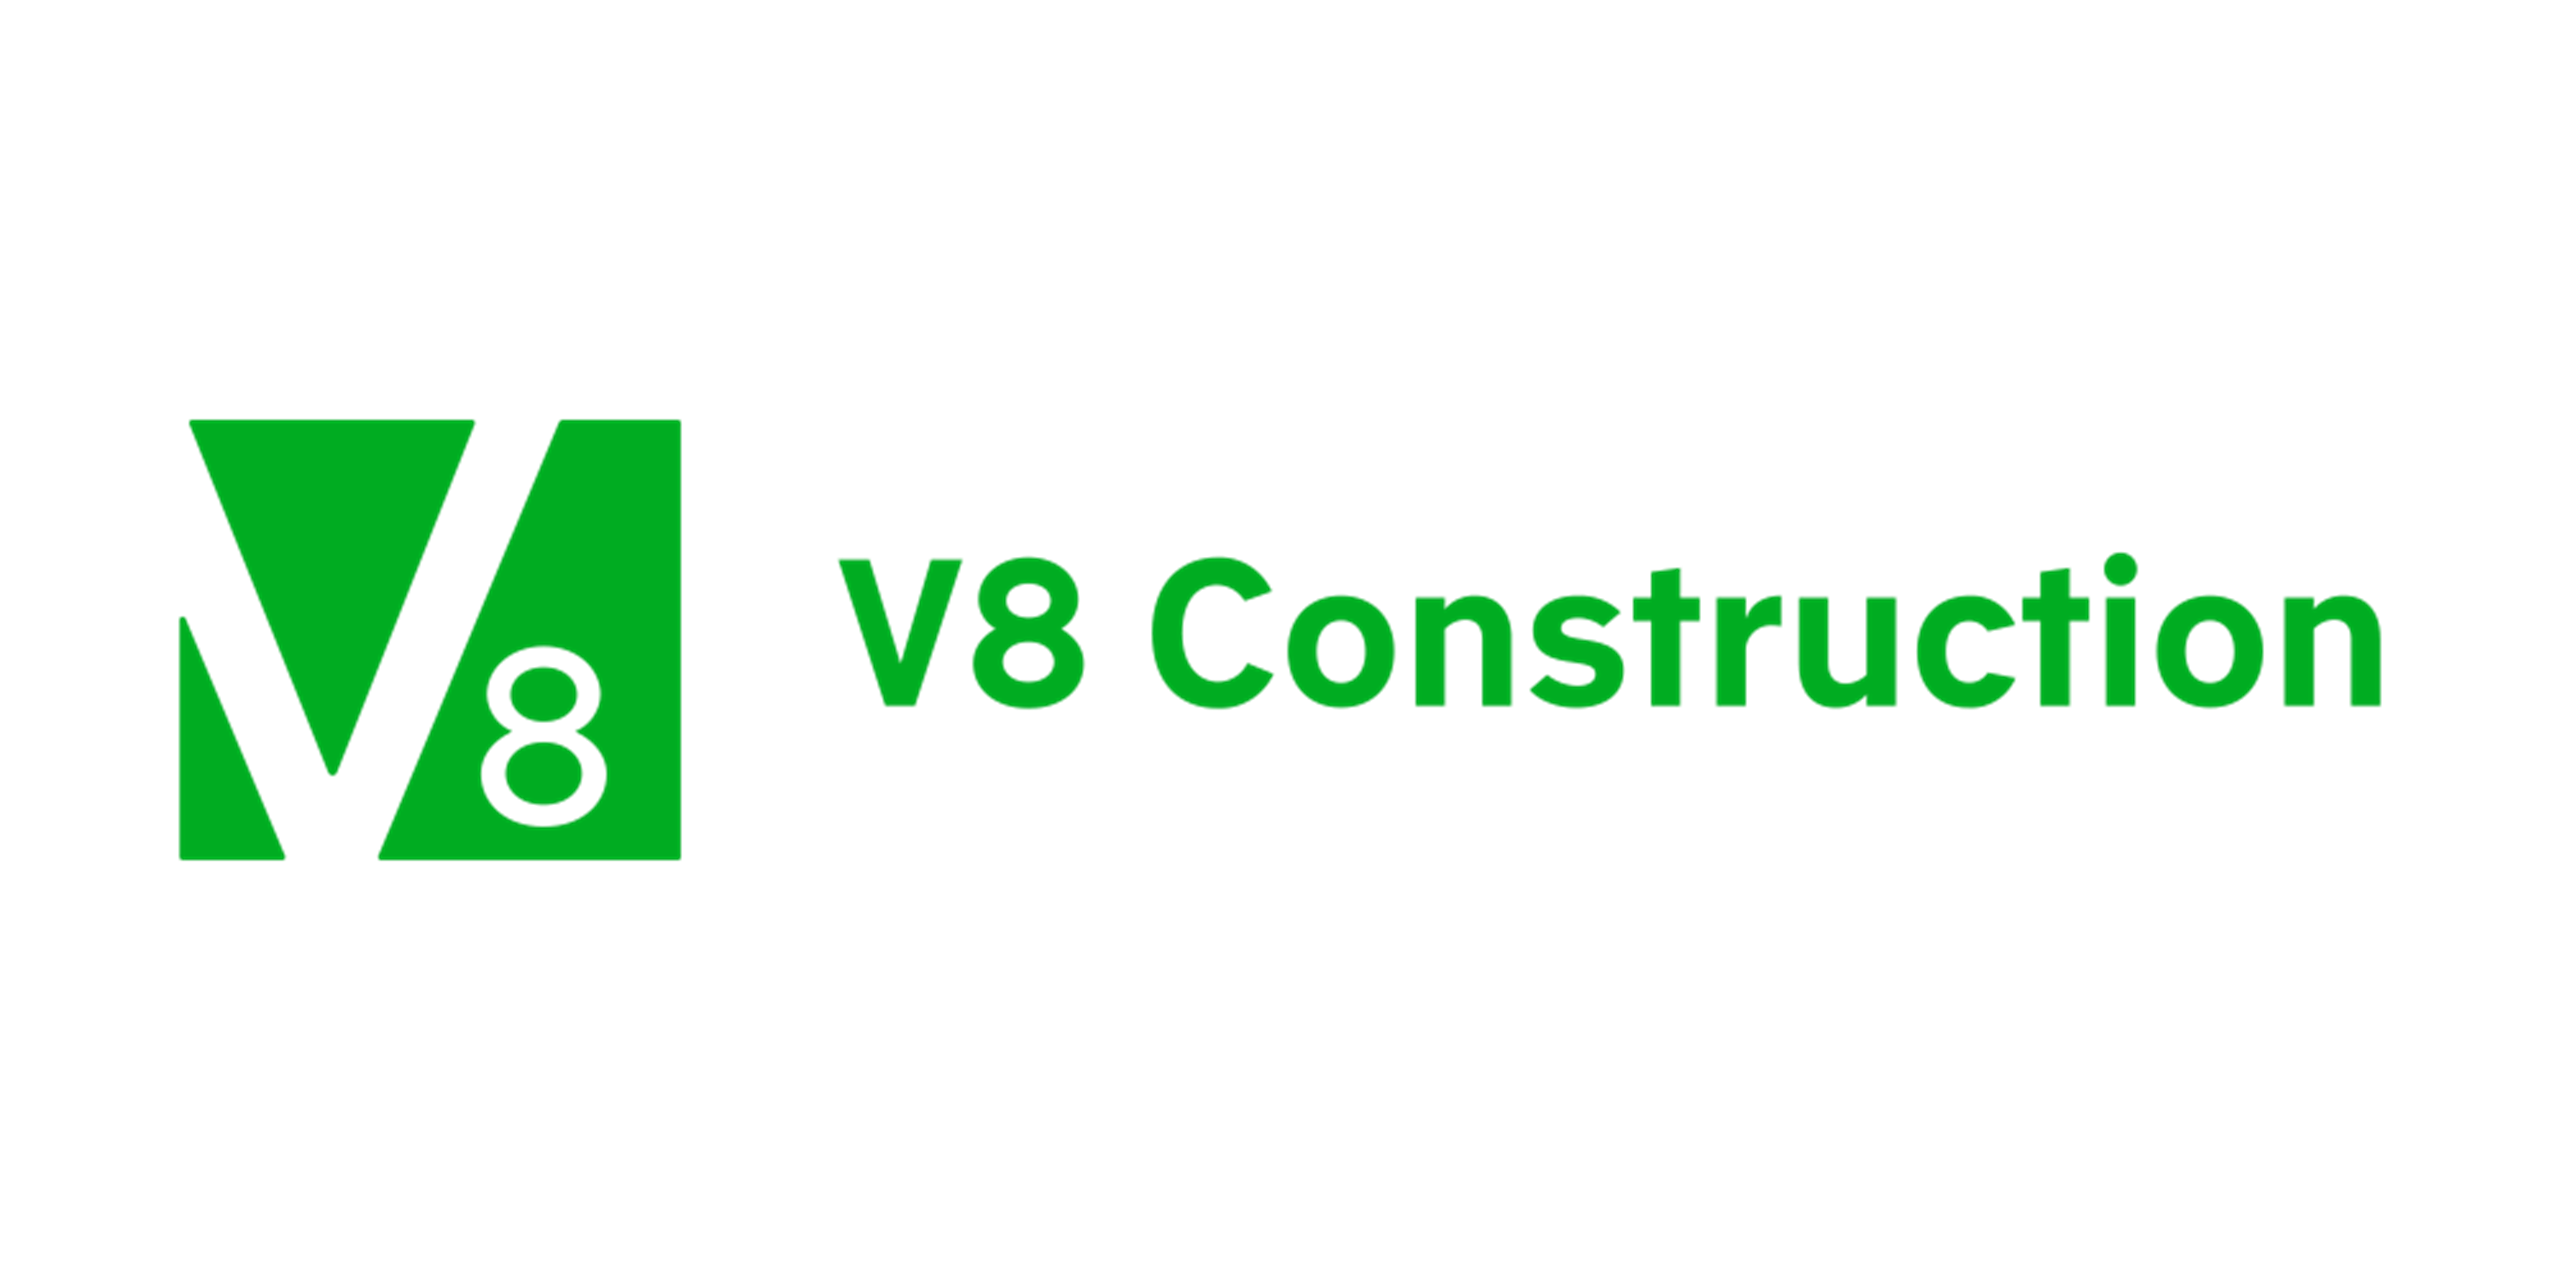 V8 Construction